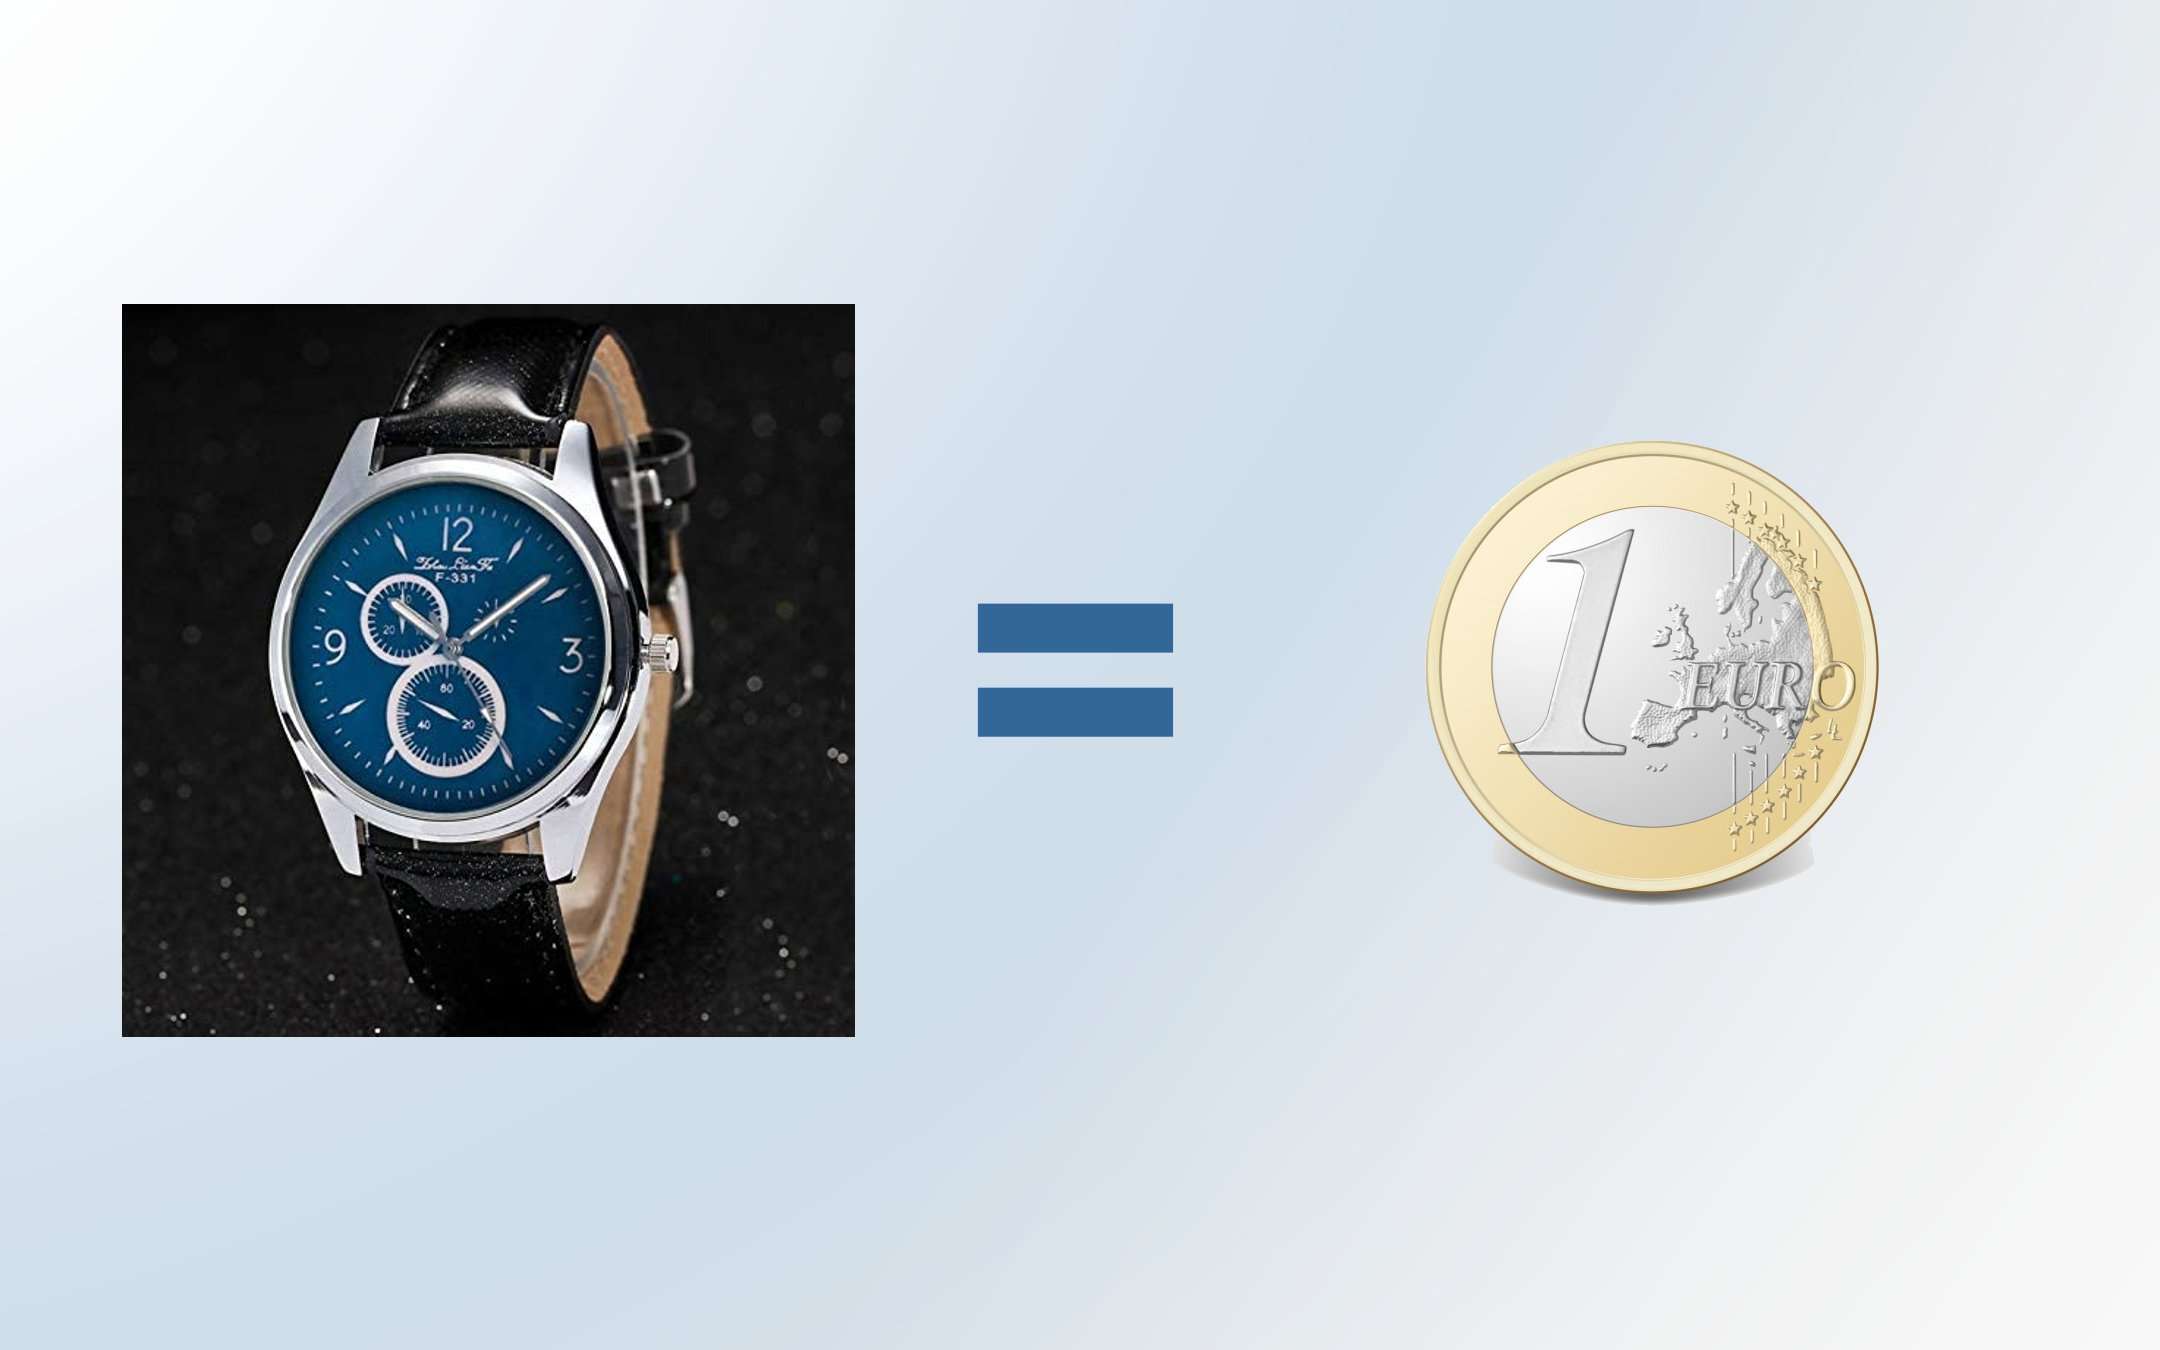 Può un orologio costare SOLO 1 EURO? A quanto pare si